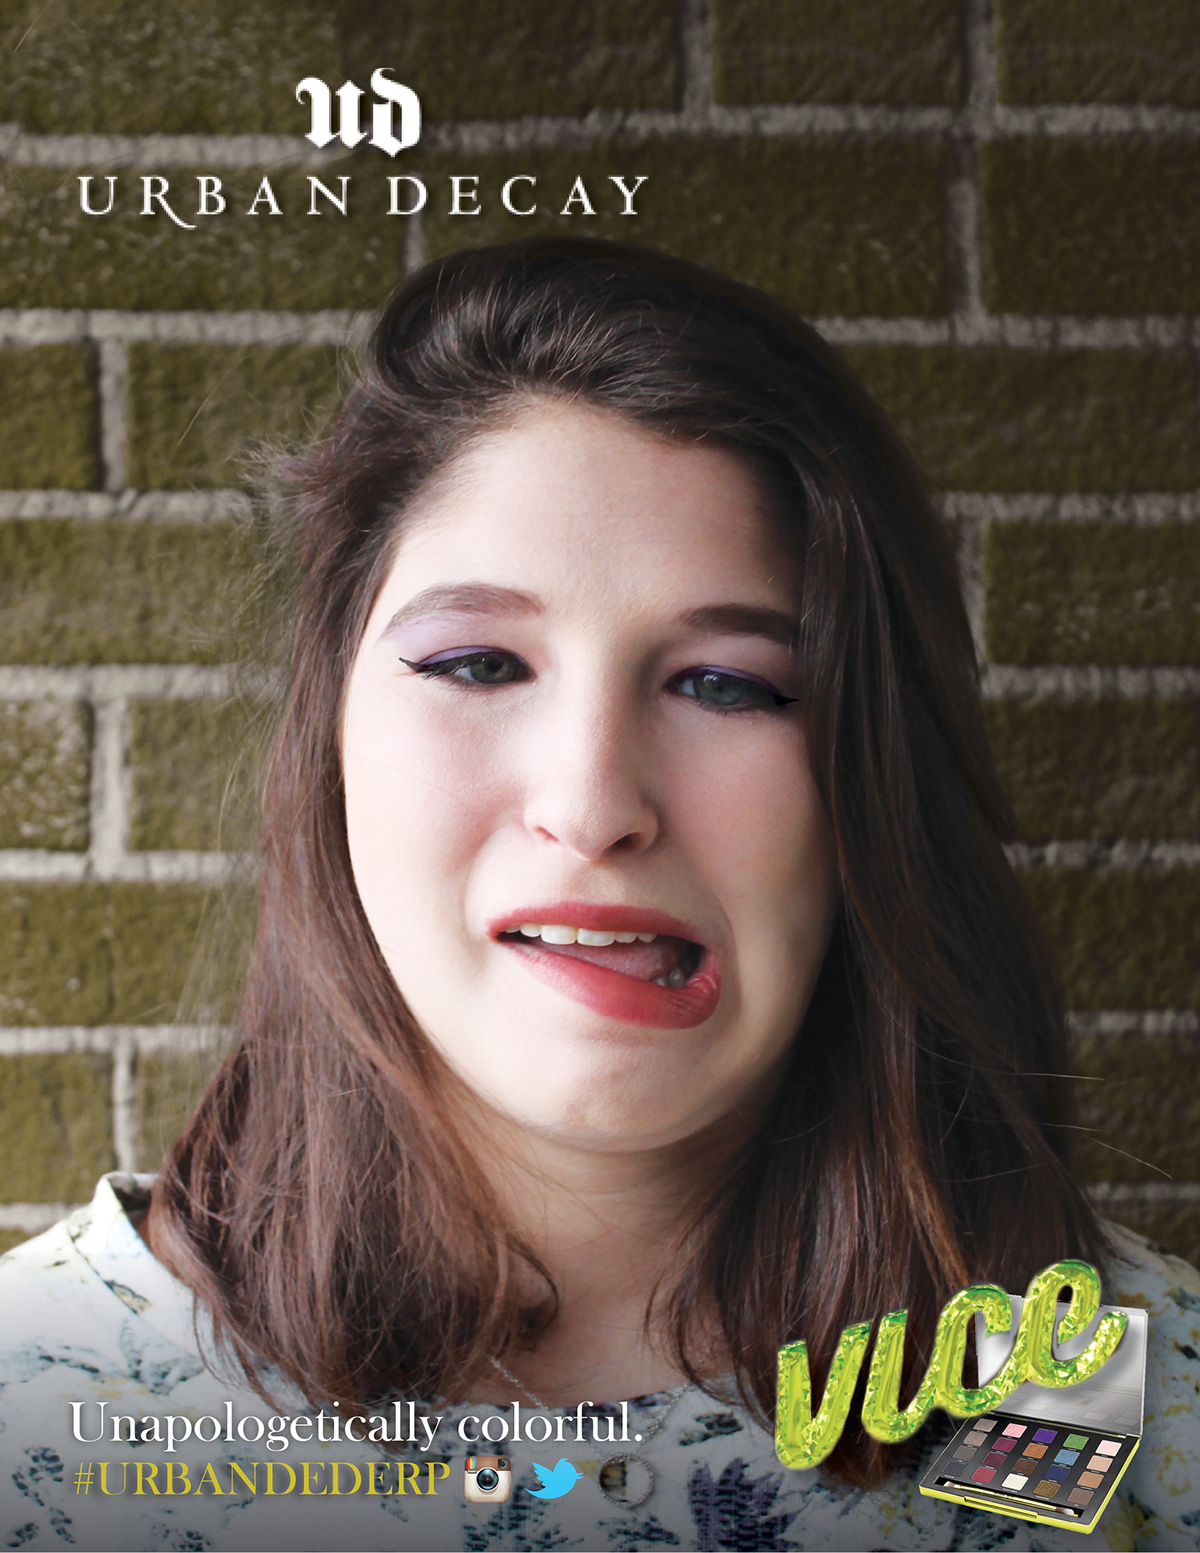 Urban Decay makeup